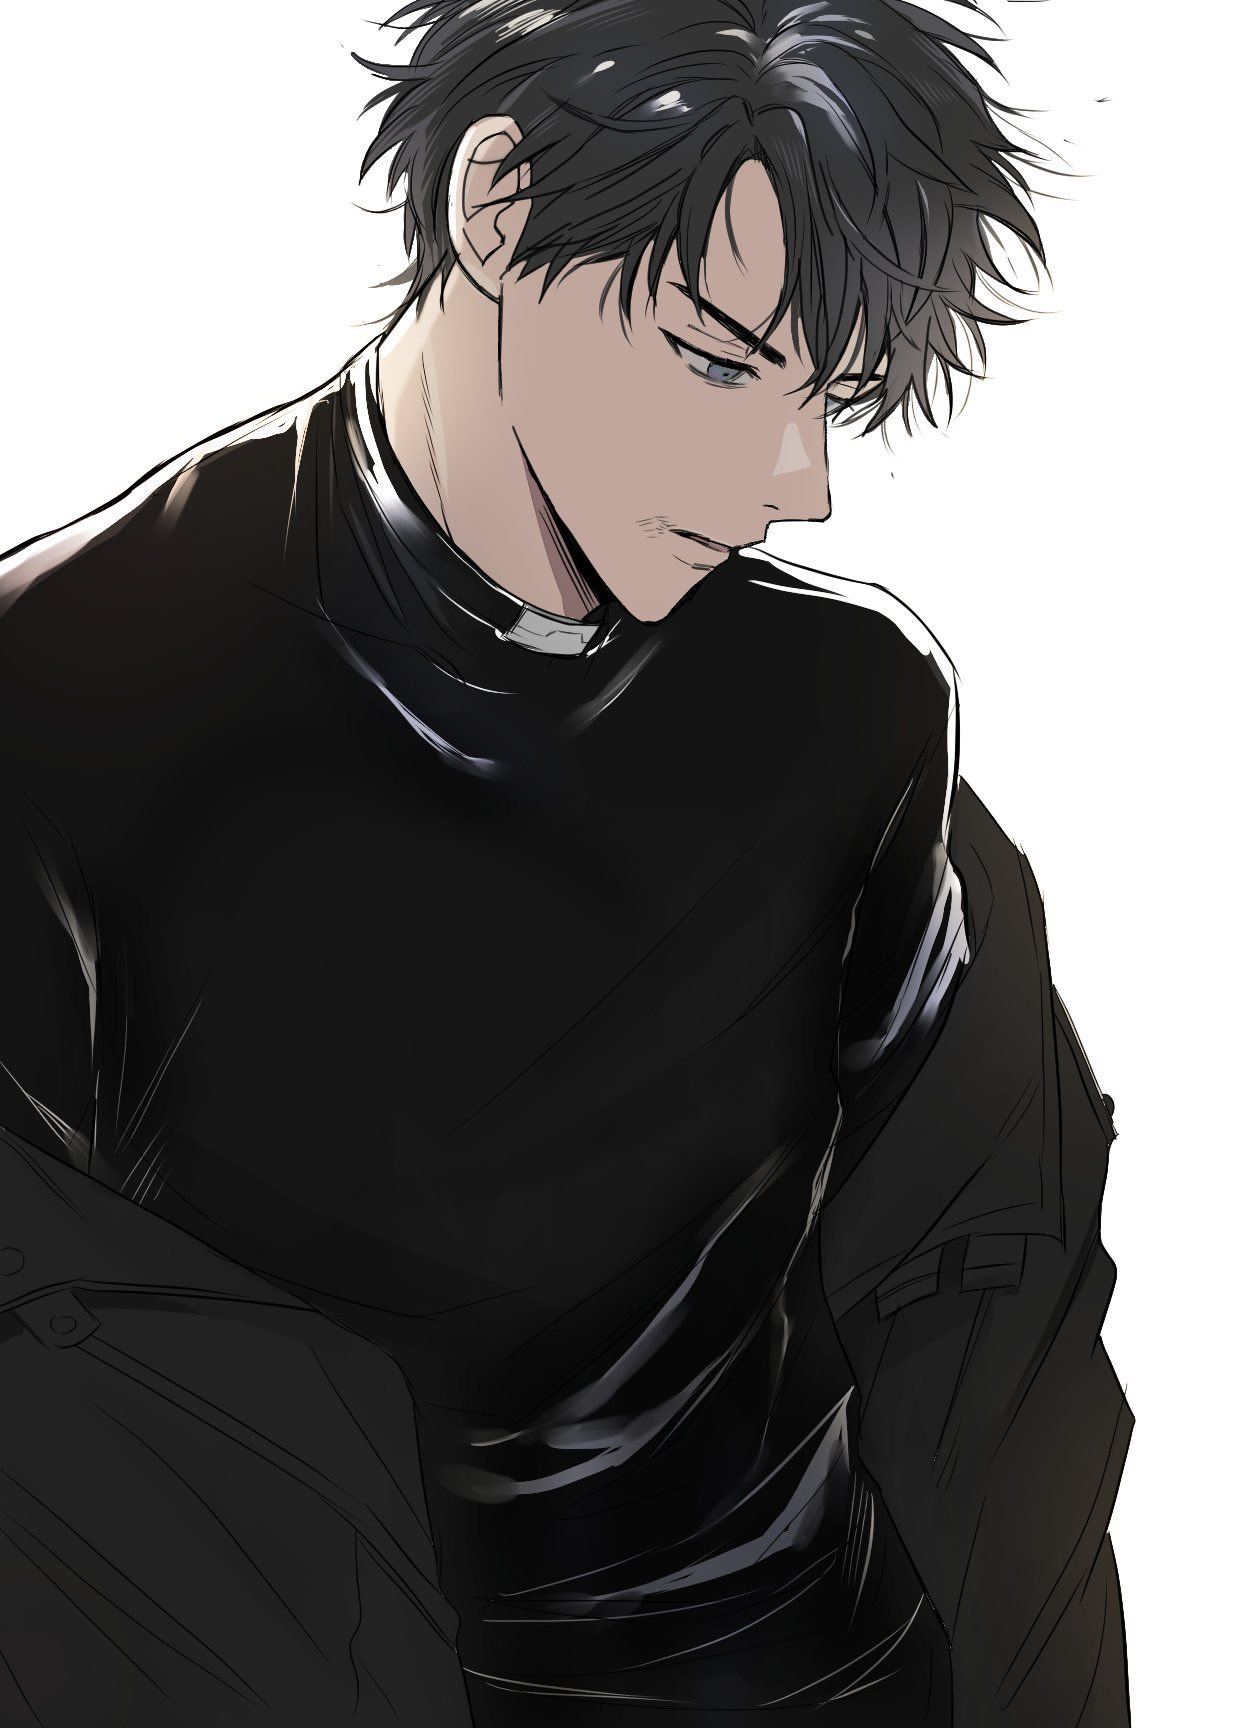 Ảnh Sadboiz Anime Chàng Trai áo đen Lạnh Lùng